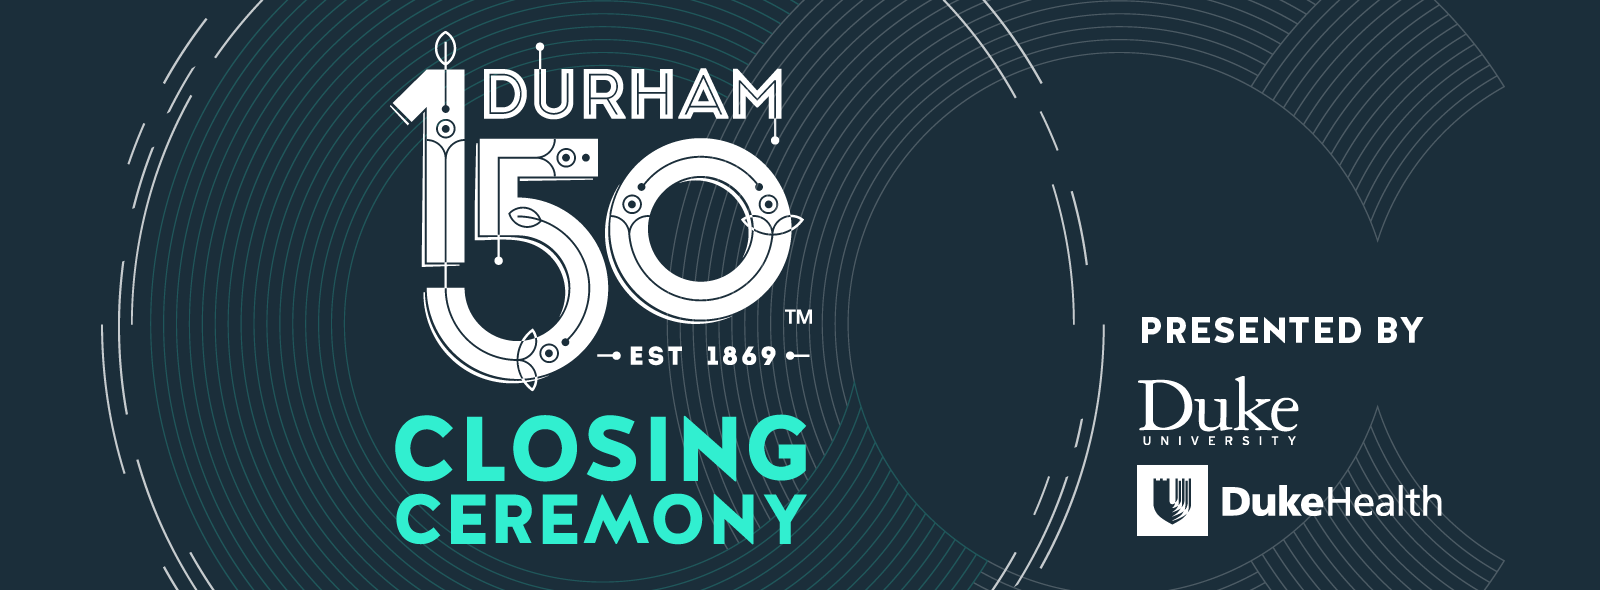 Durham 150 Closing Ceremony